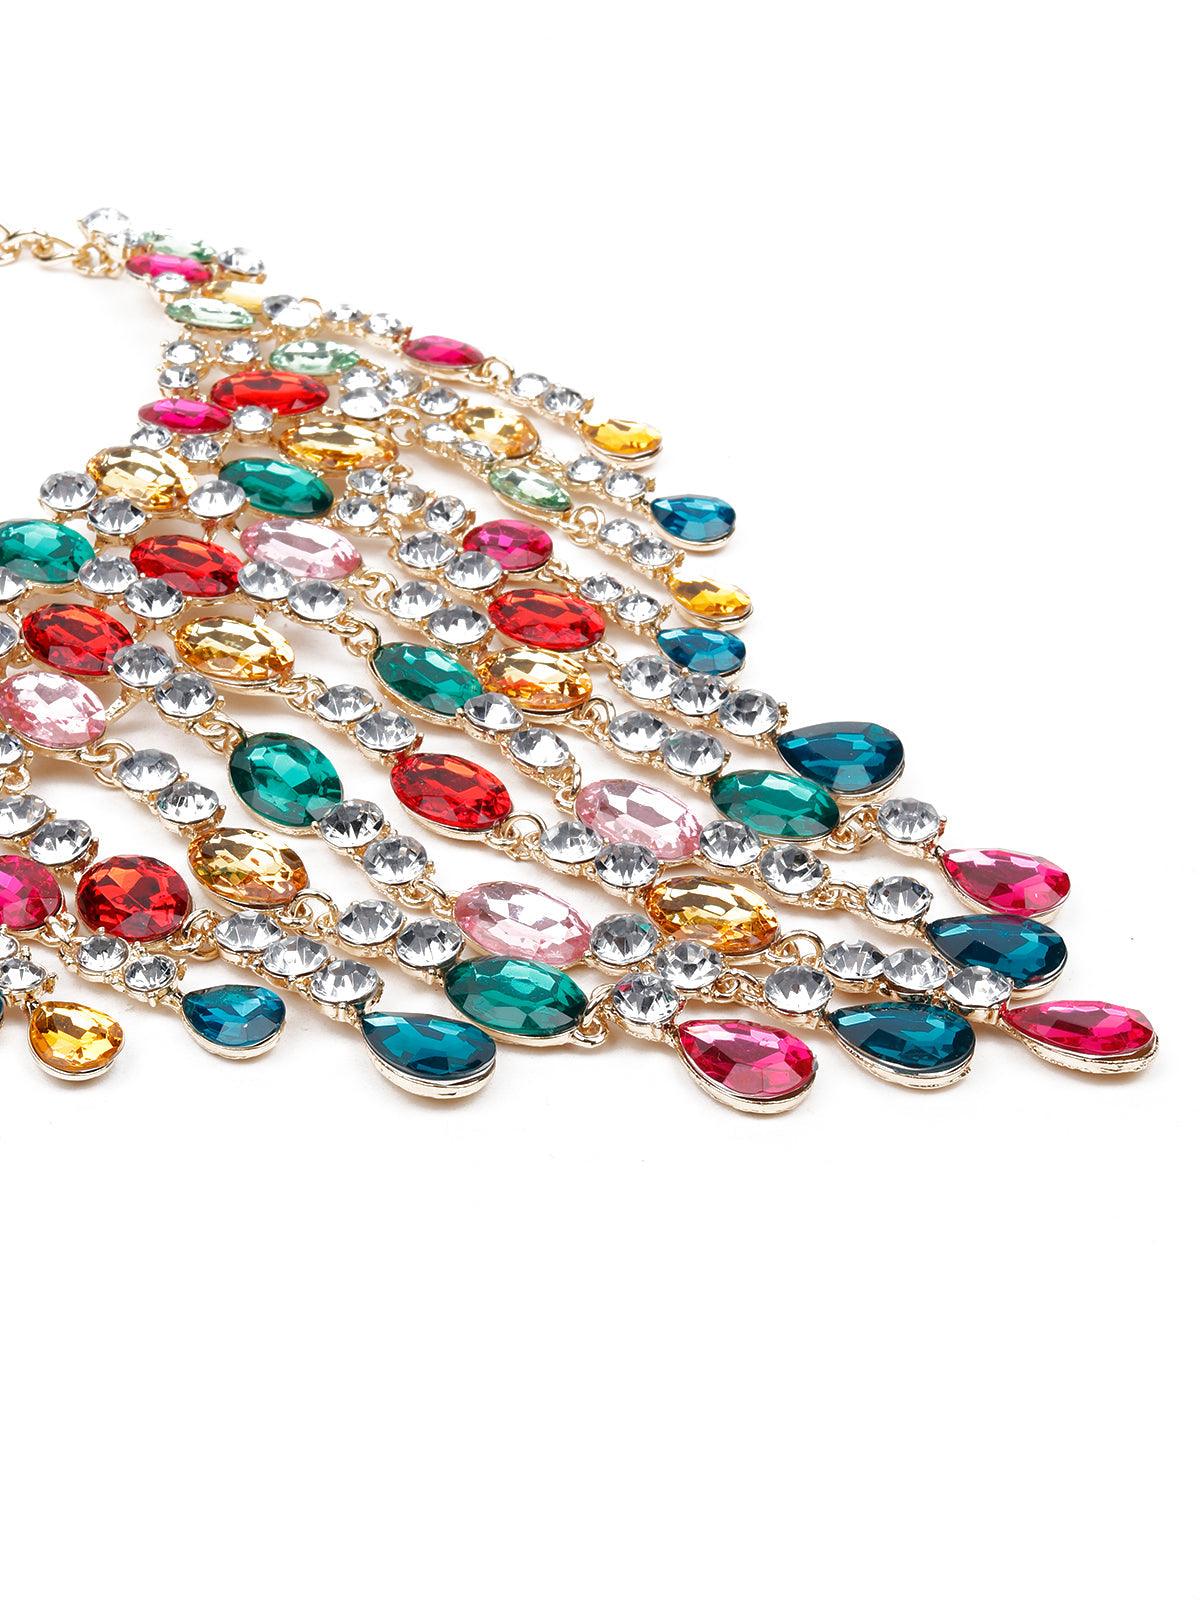 Women's Elegant Gemstone Dropping Crystal Necklace - Odette